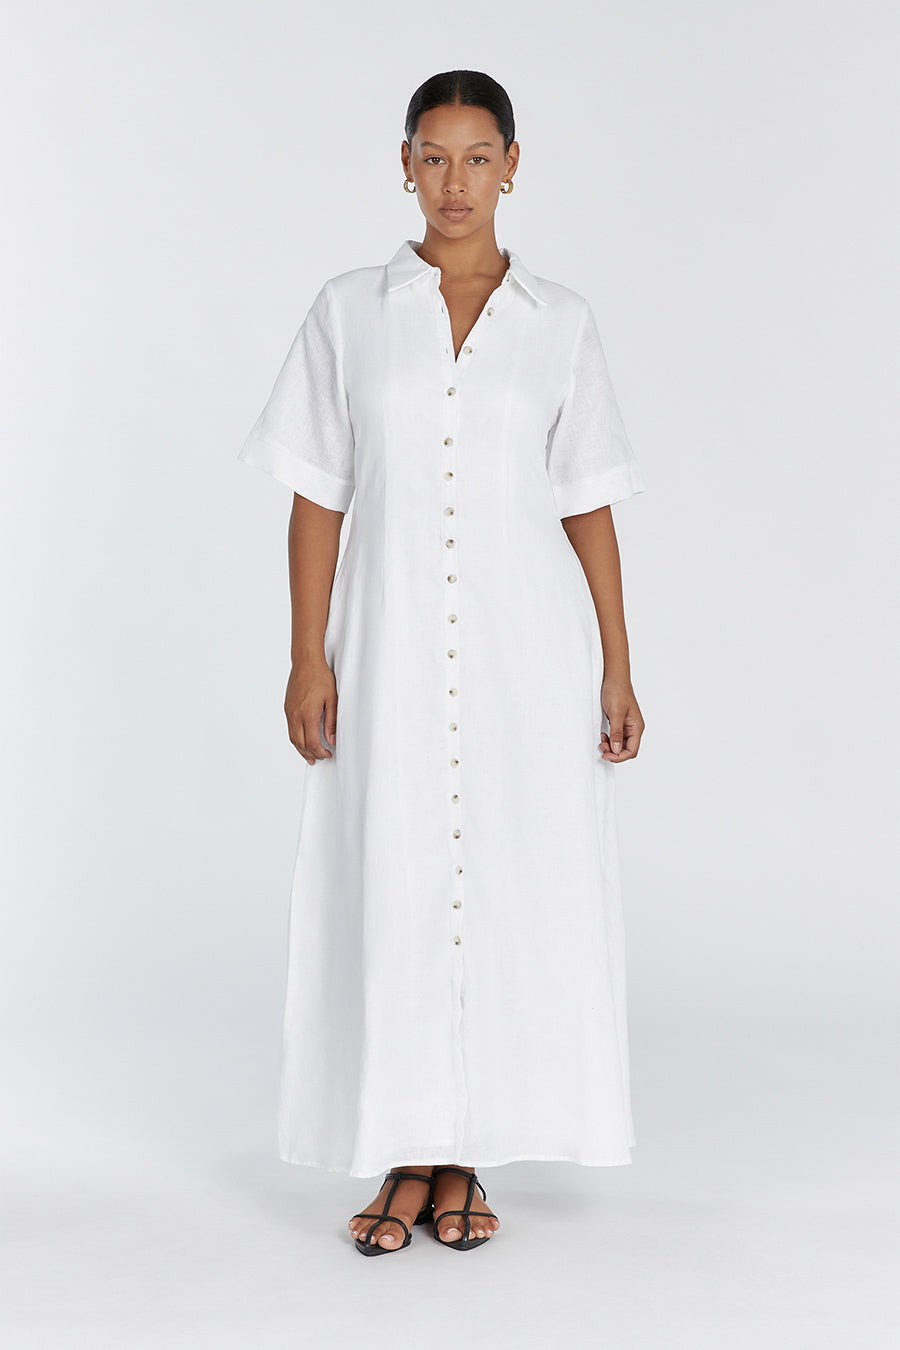 Buy Women White Tiered Shirt Dress Online At Best Price - Sassafras.in